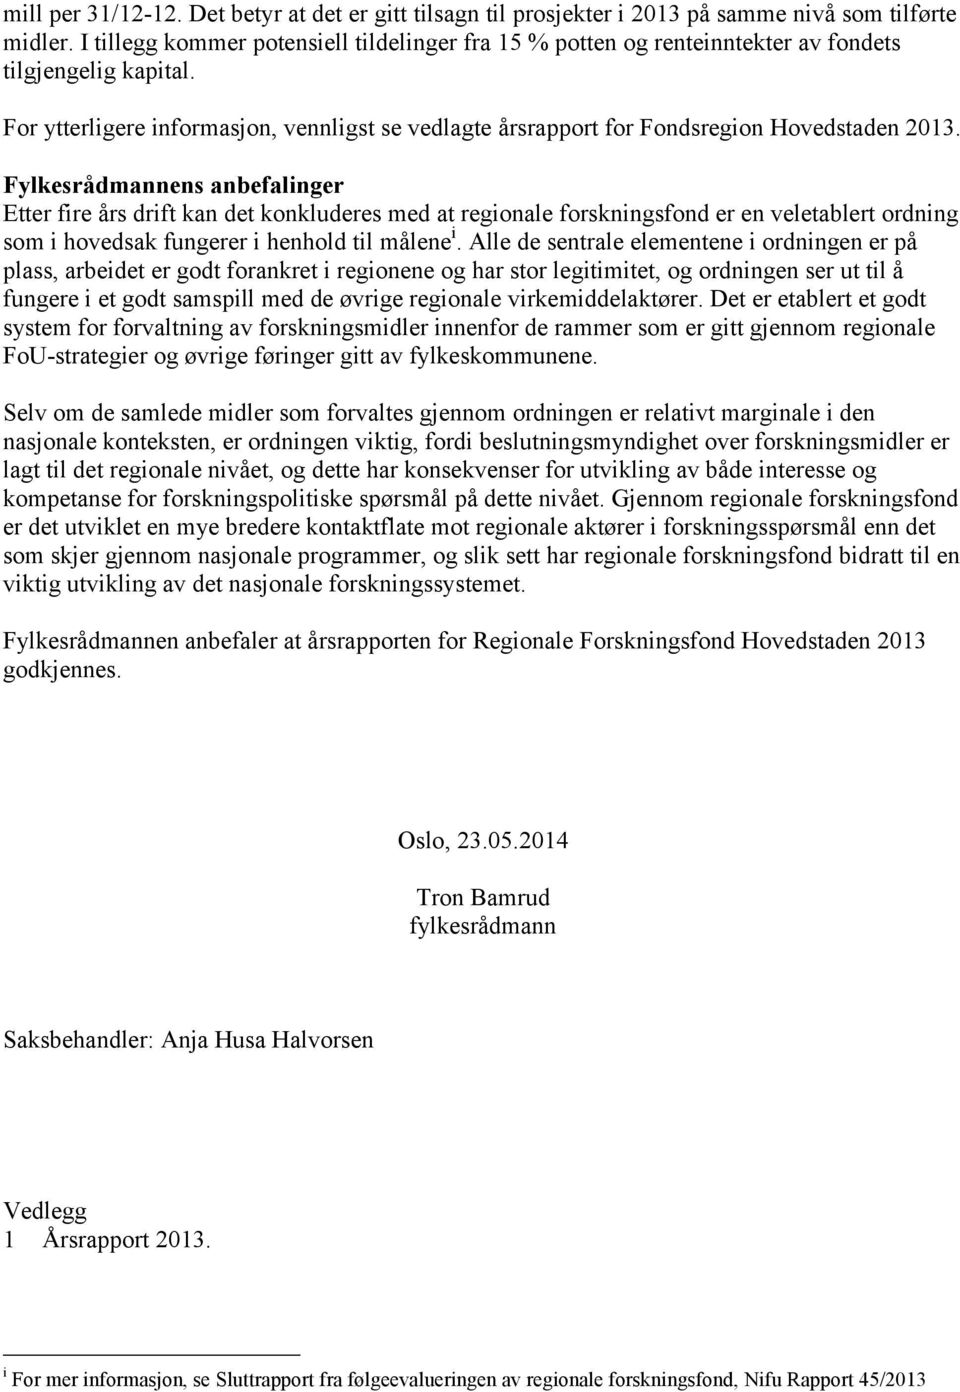 For ytterligere informasjon, vennligst se vedlagte årsrapport for Fondsregion Hovedstaden 2013.